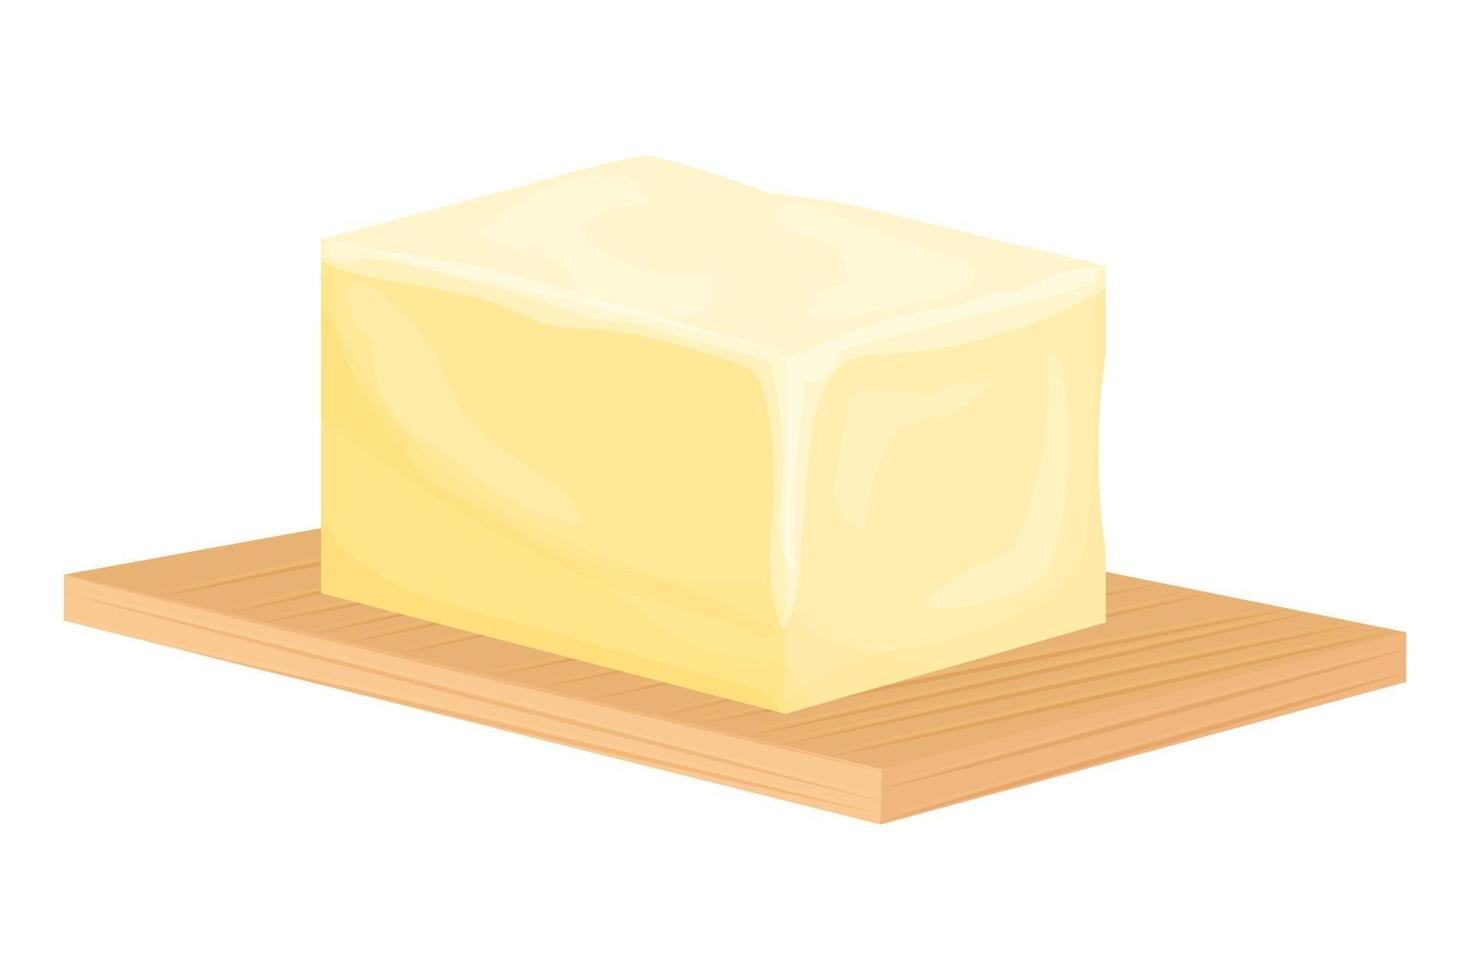 tijolo de manteiga na tábua de madeira em estilo cartoon, isolado no fundo. fatias de margarina ou produtos lácteos naturais gordurosos para barrar. alimentos calóricos para cozinhar e comer, lançamento. vetor